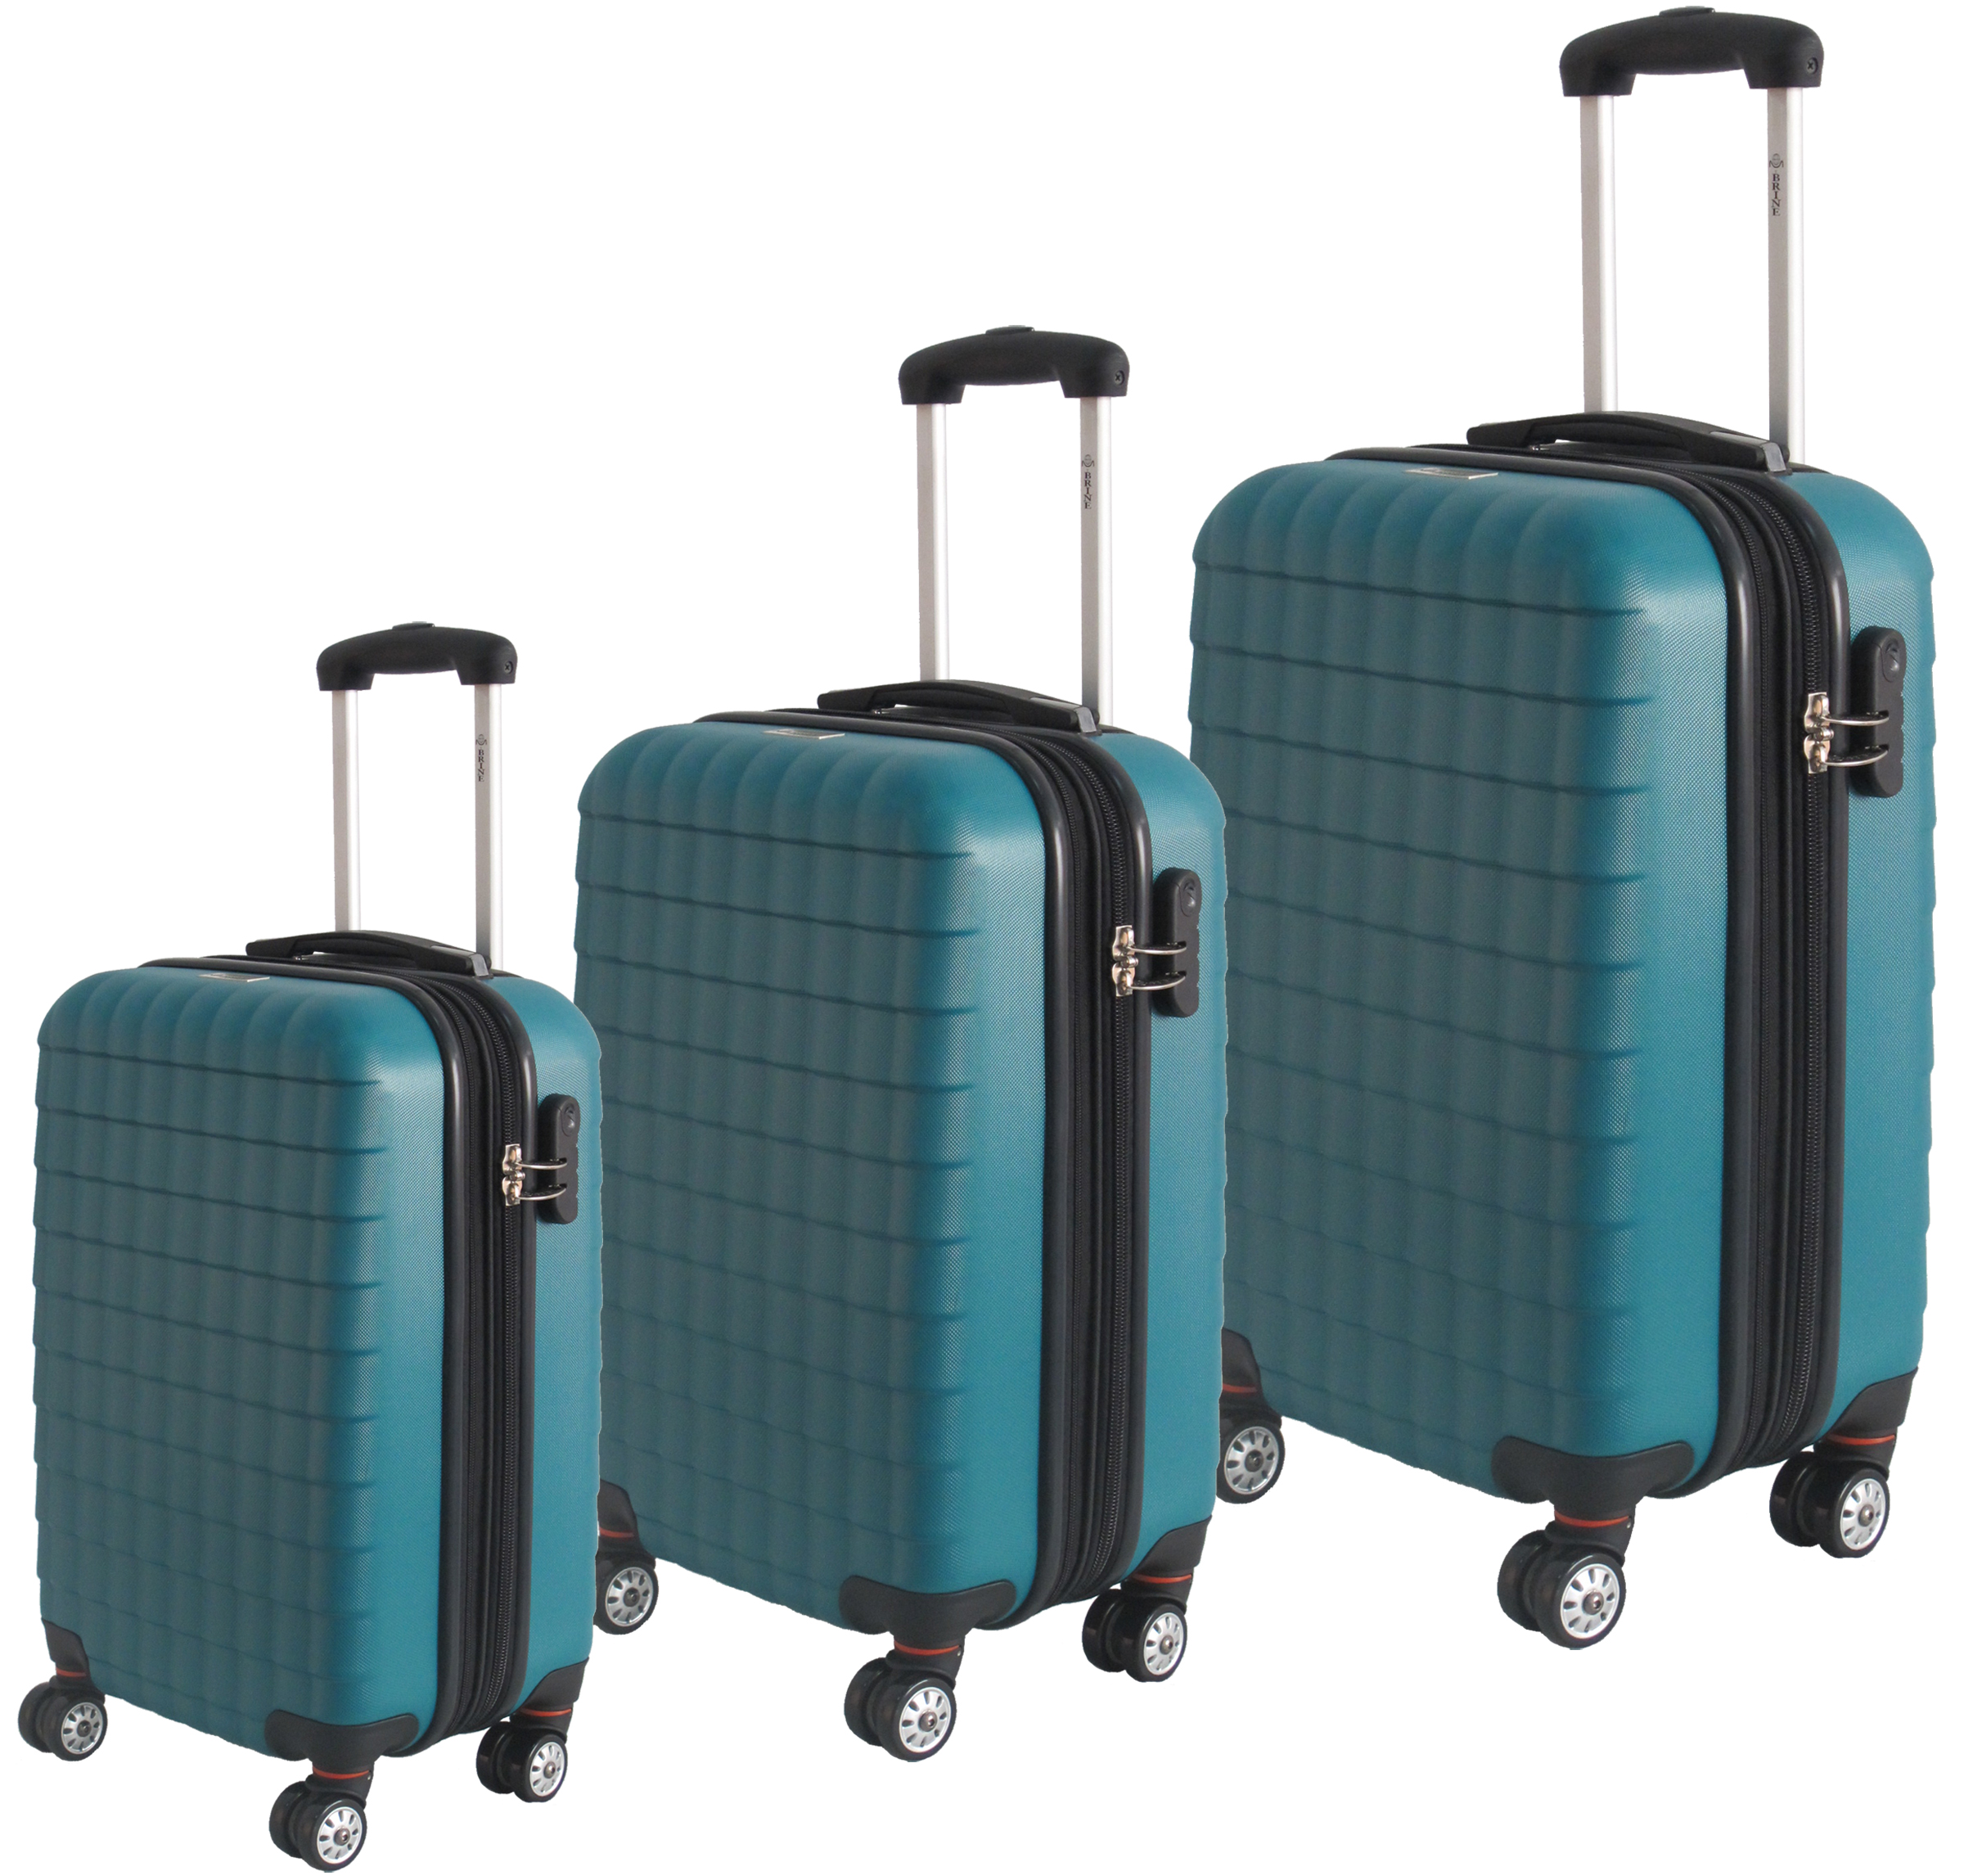 McBRINE Eco Friendly Hard Sided Expandable 3 Pc Luggage Set